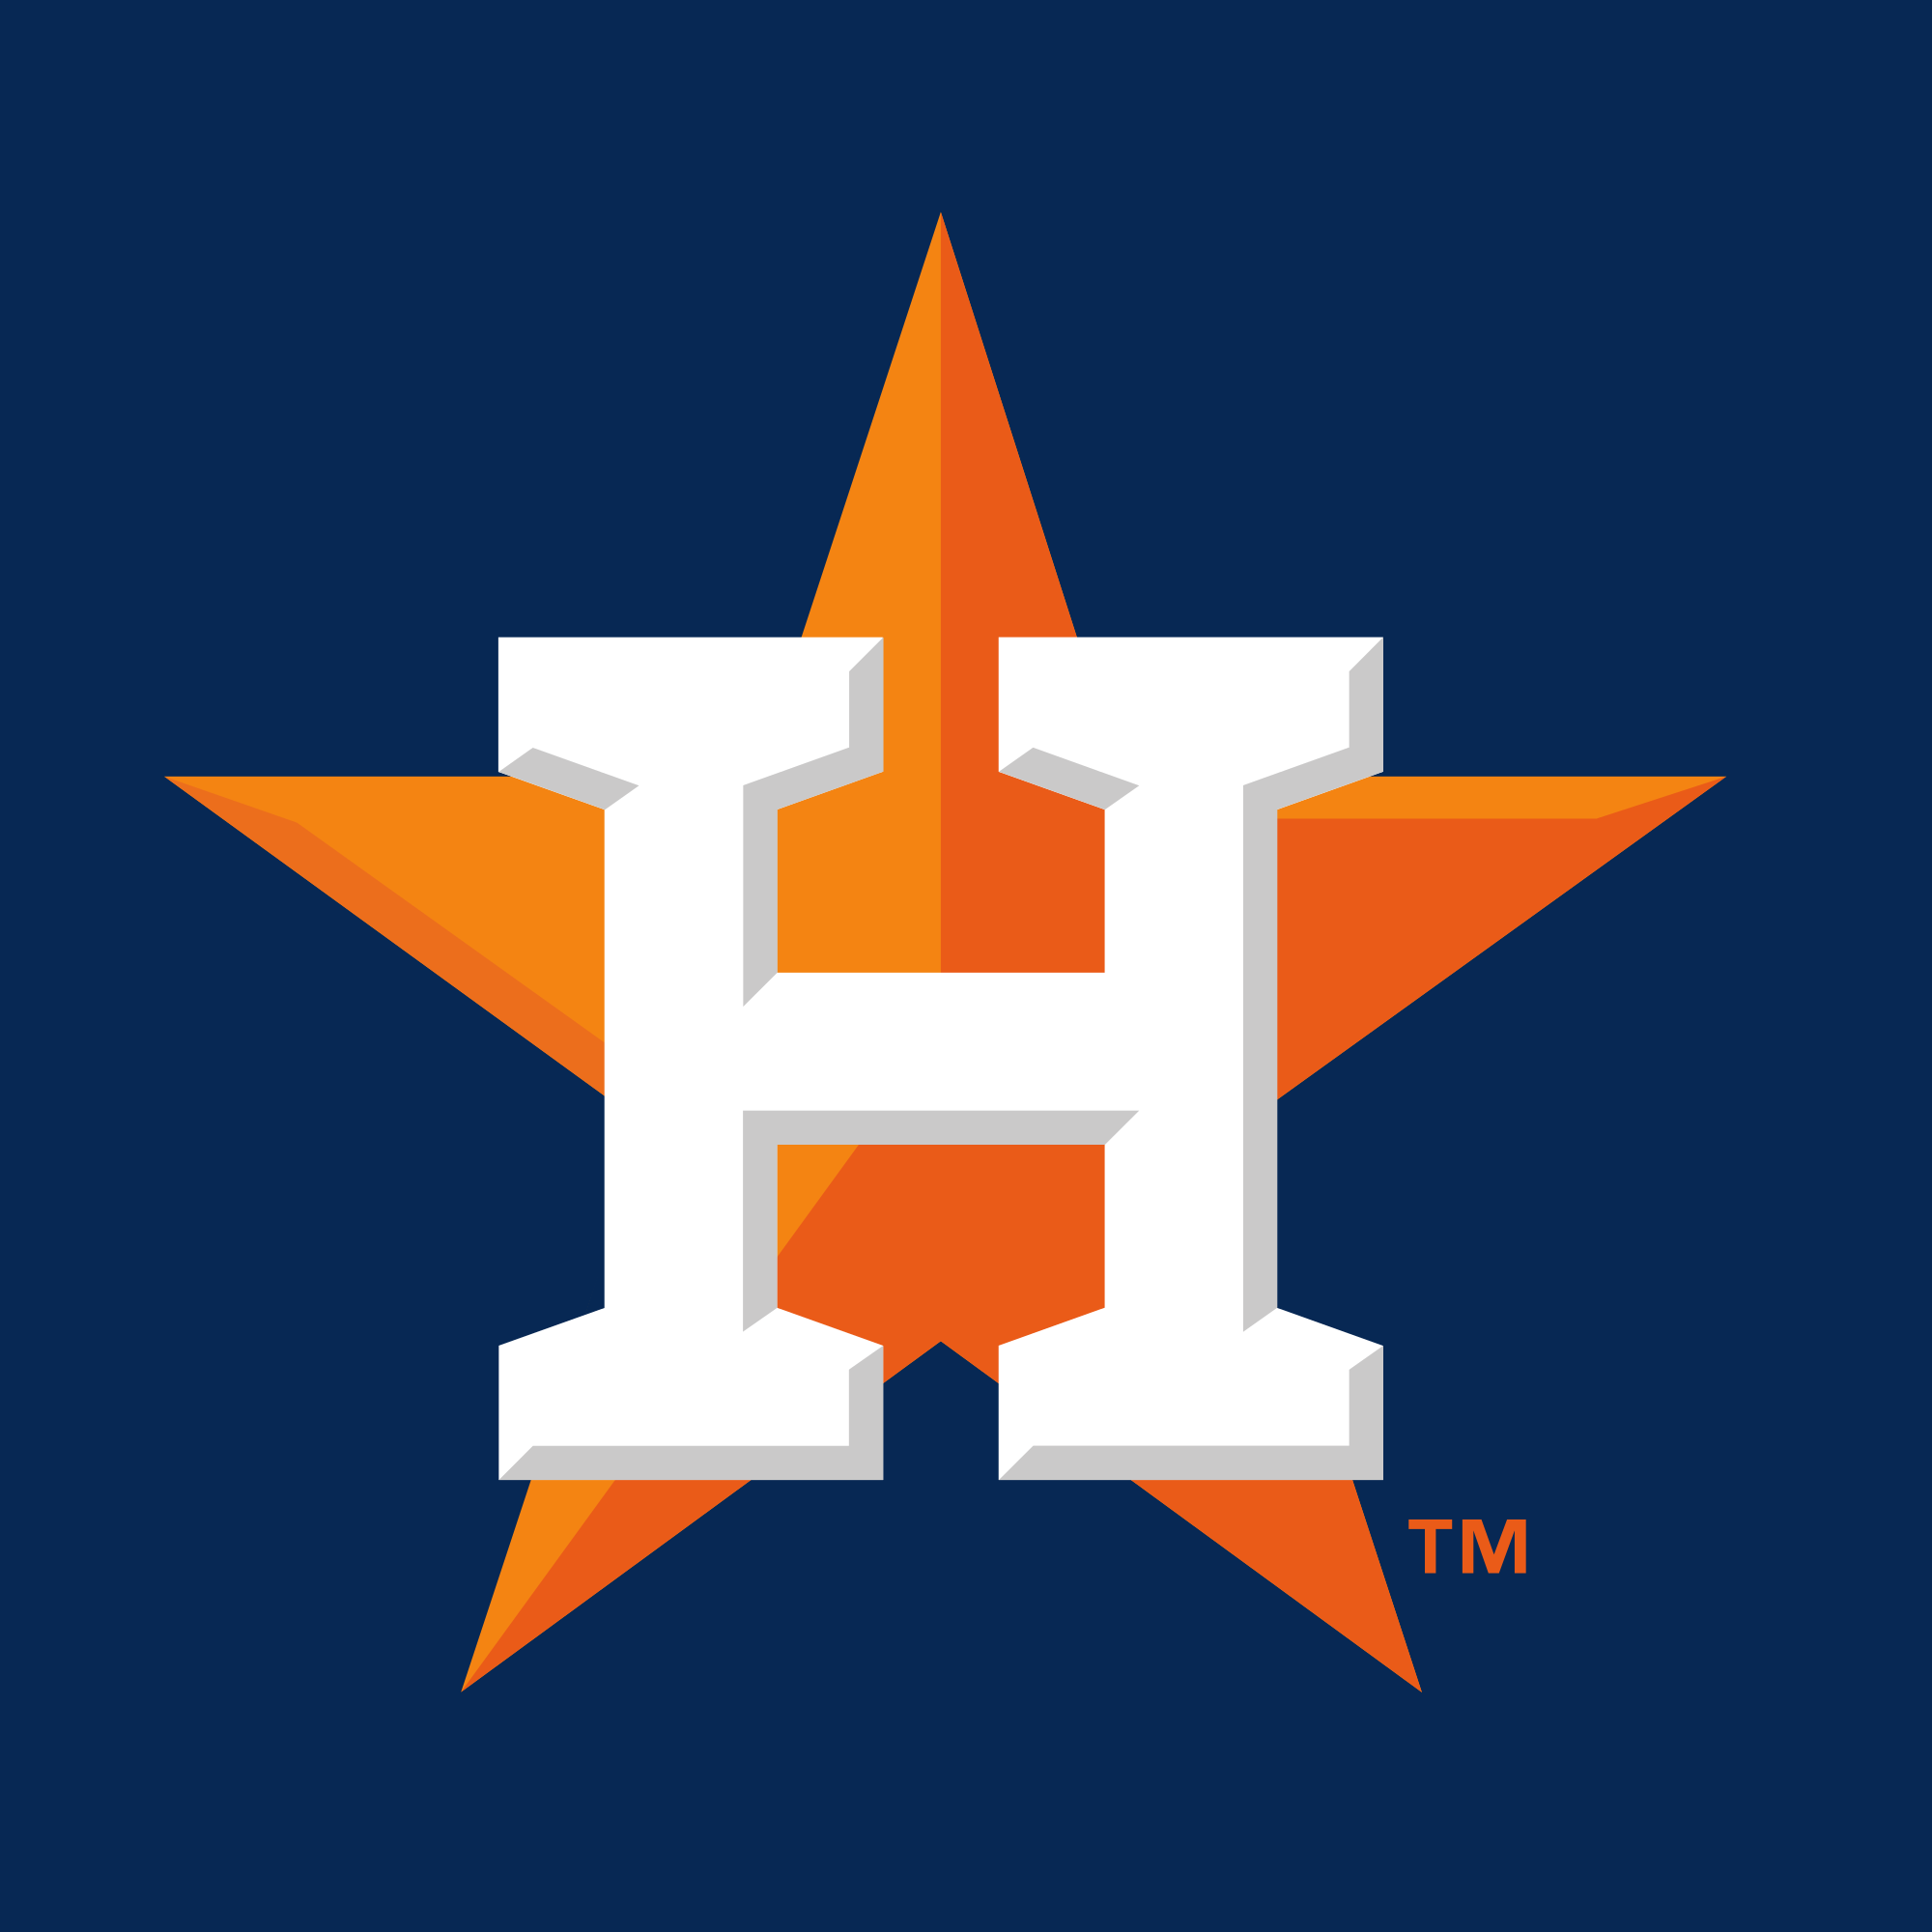 houston-astros-logo